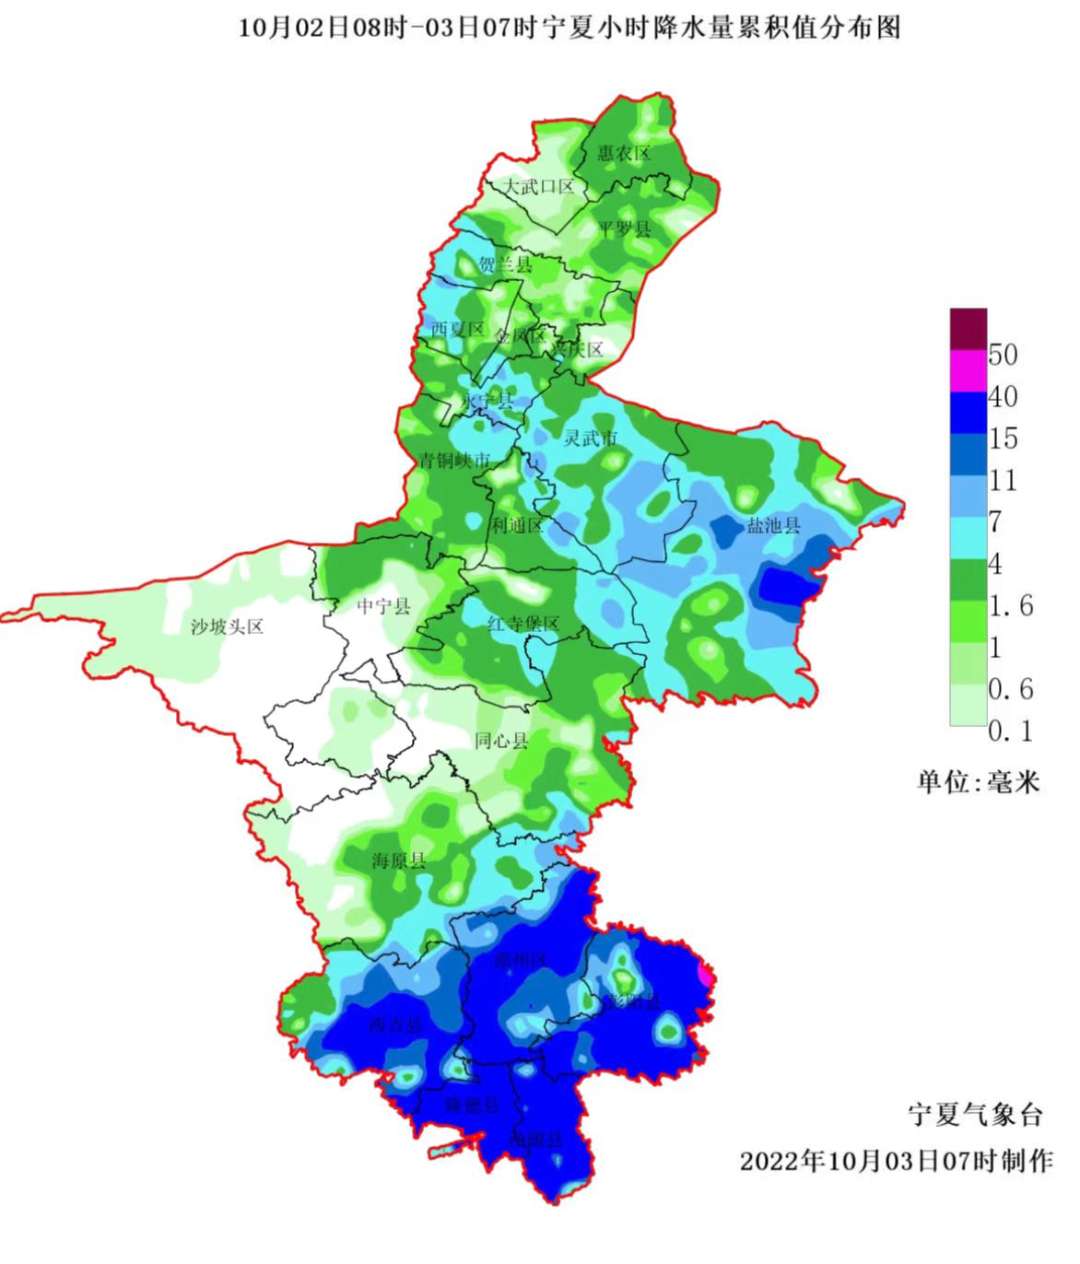 宁夏大部出现降水天气 最大累计降水量45.2毫米